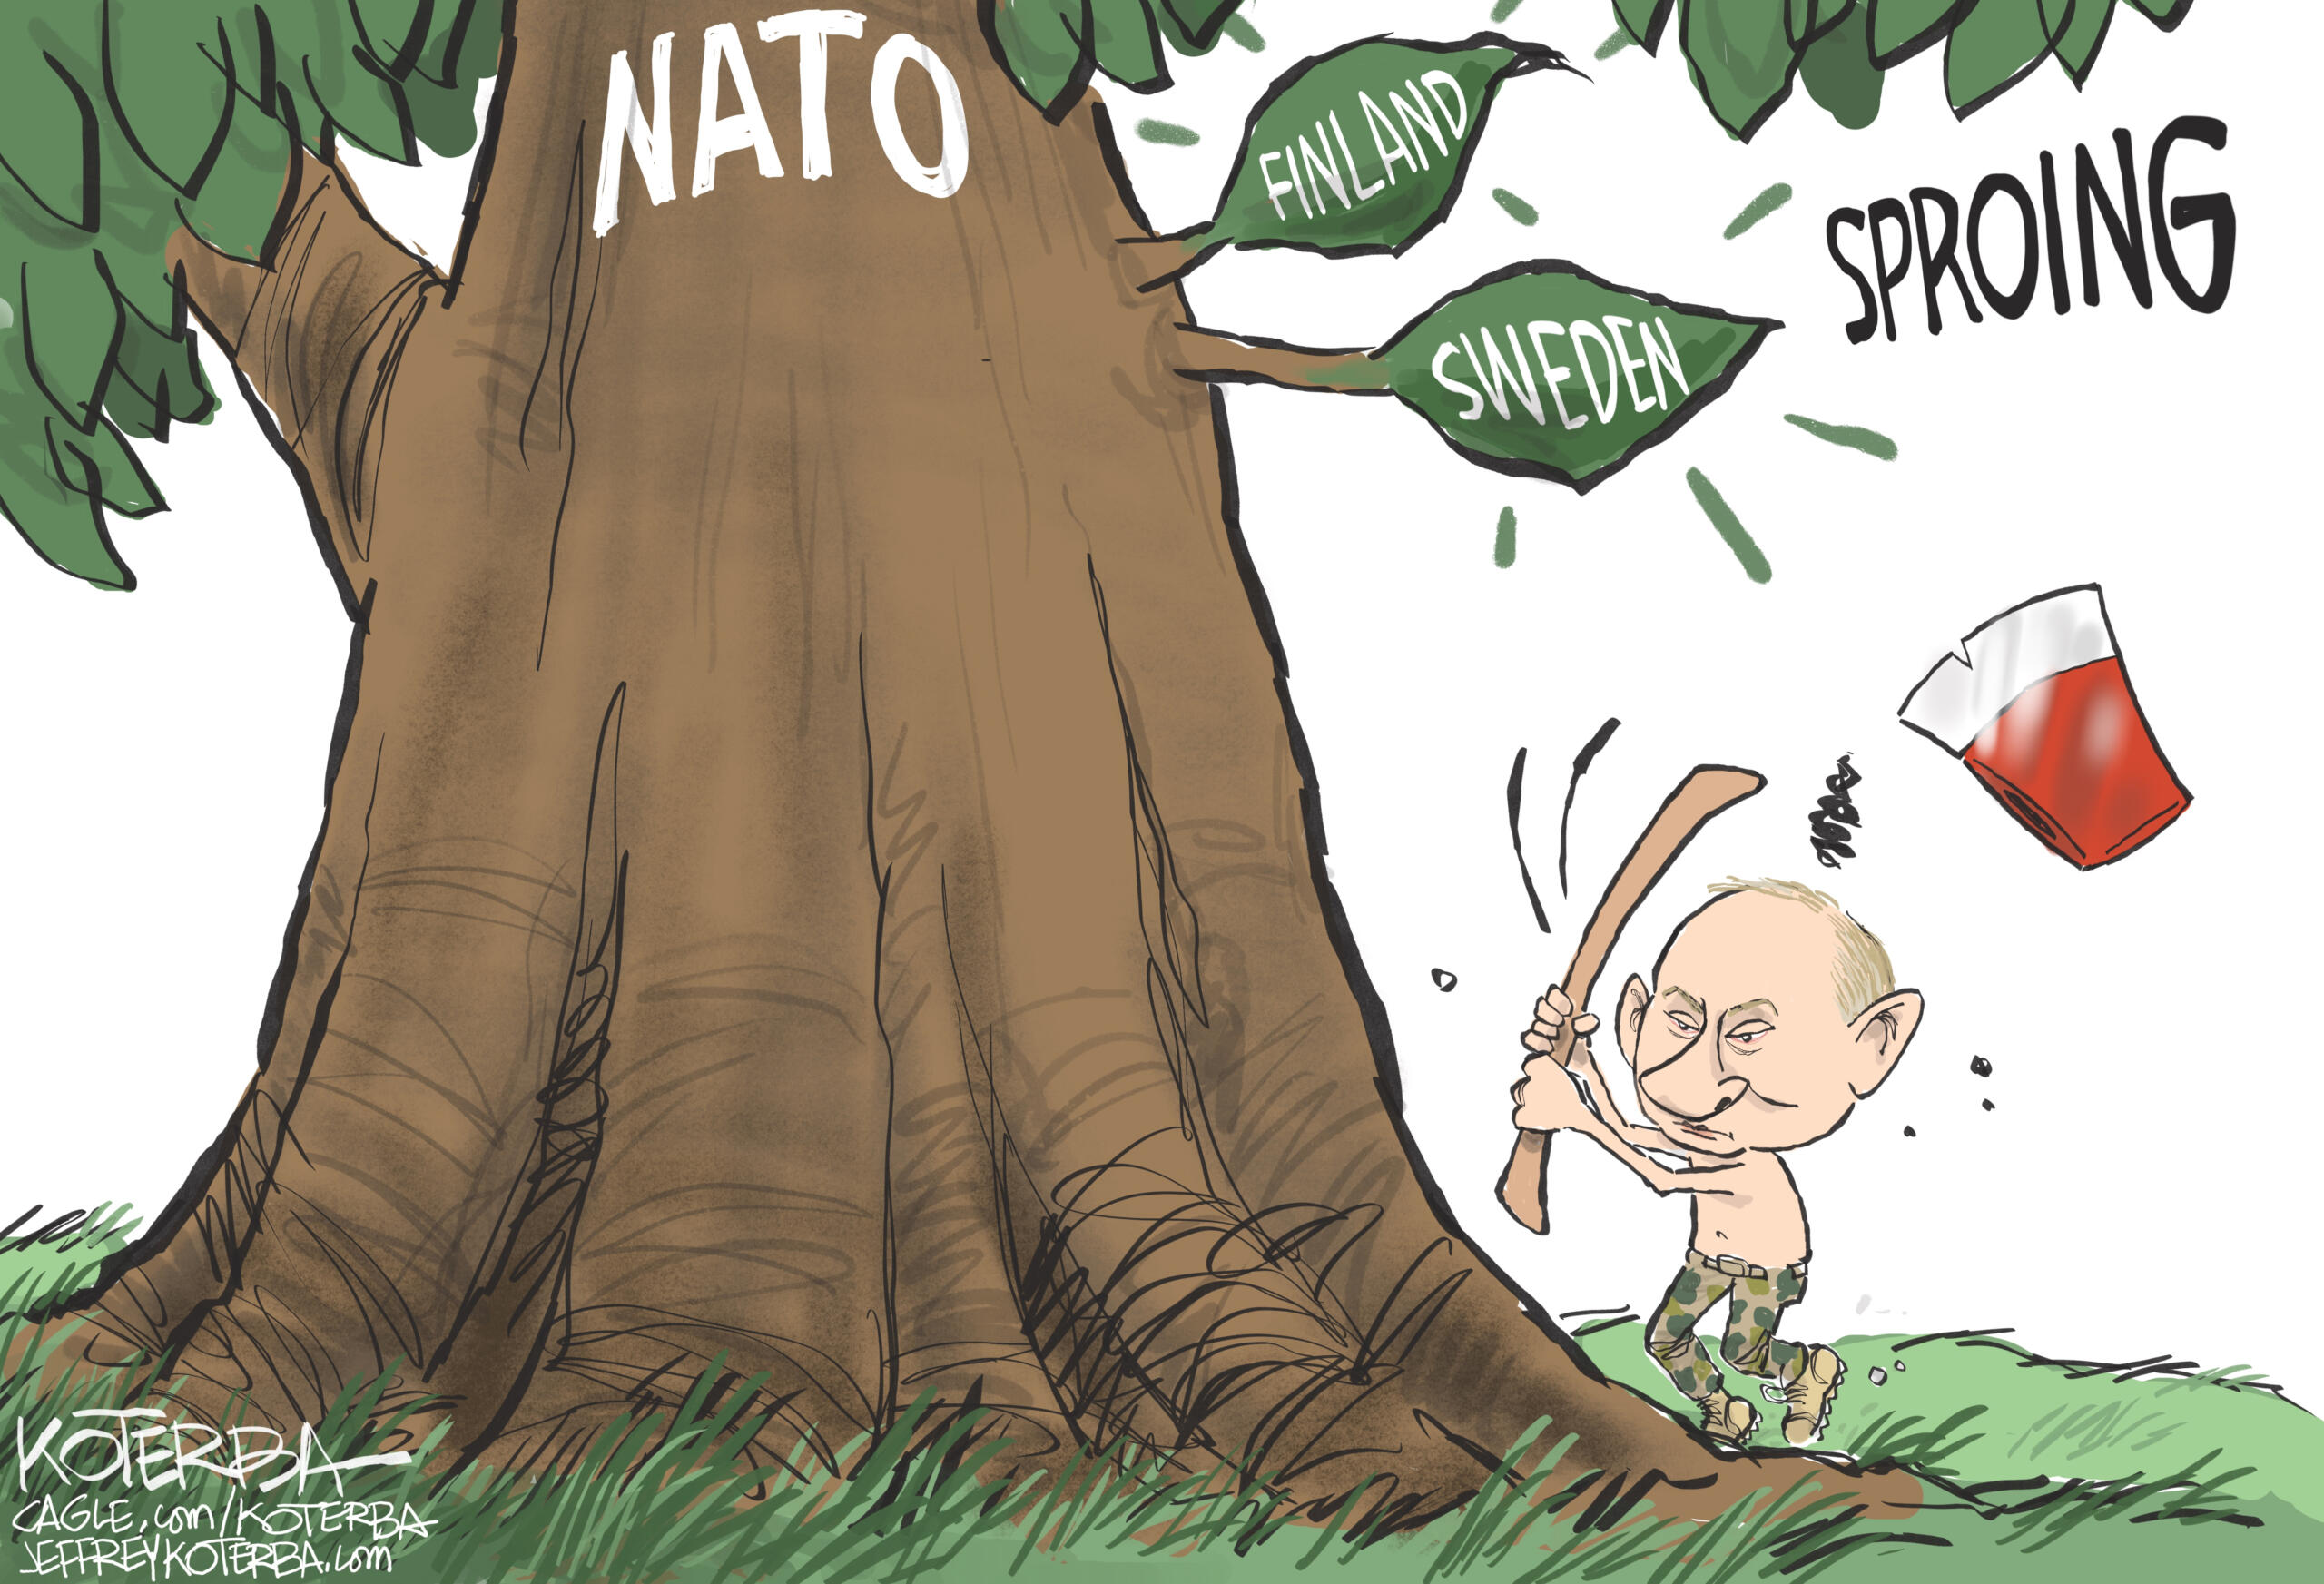 July 15: NATO and Putin